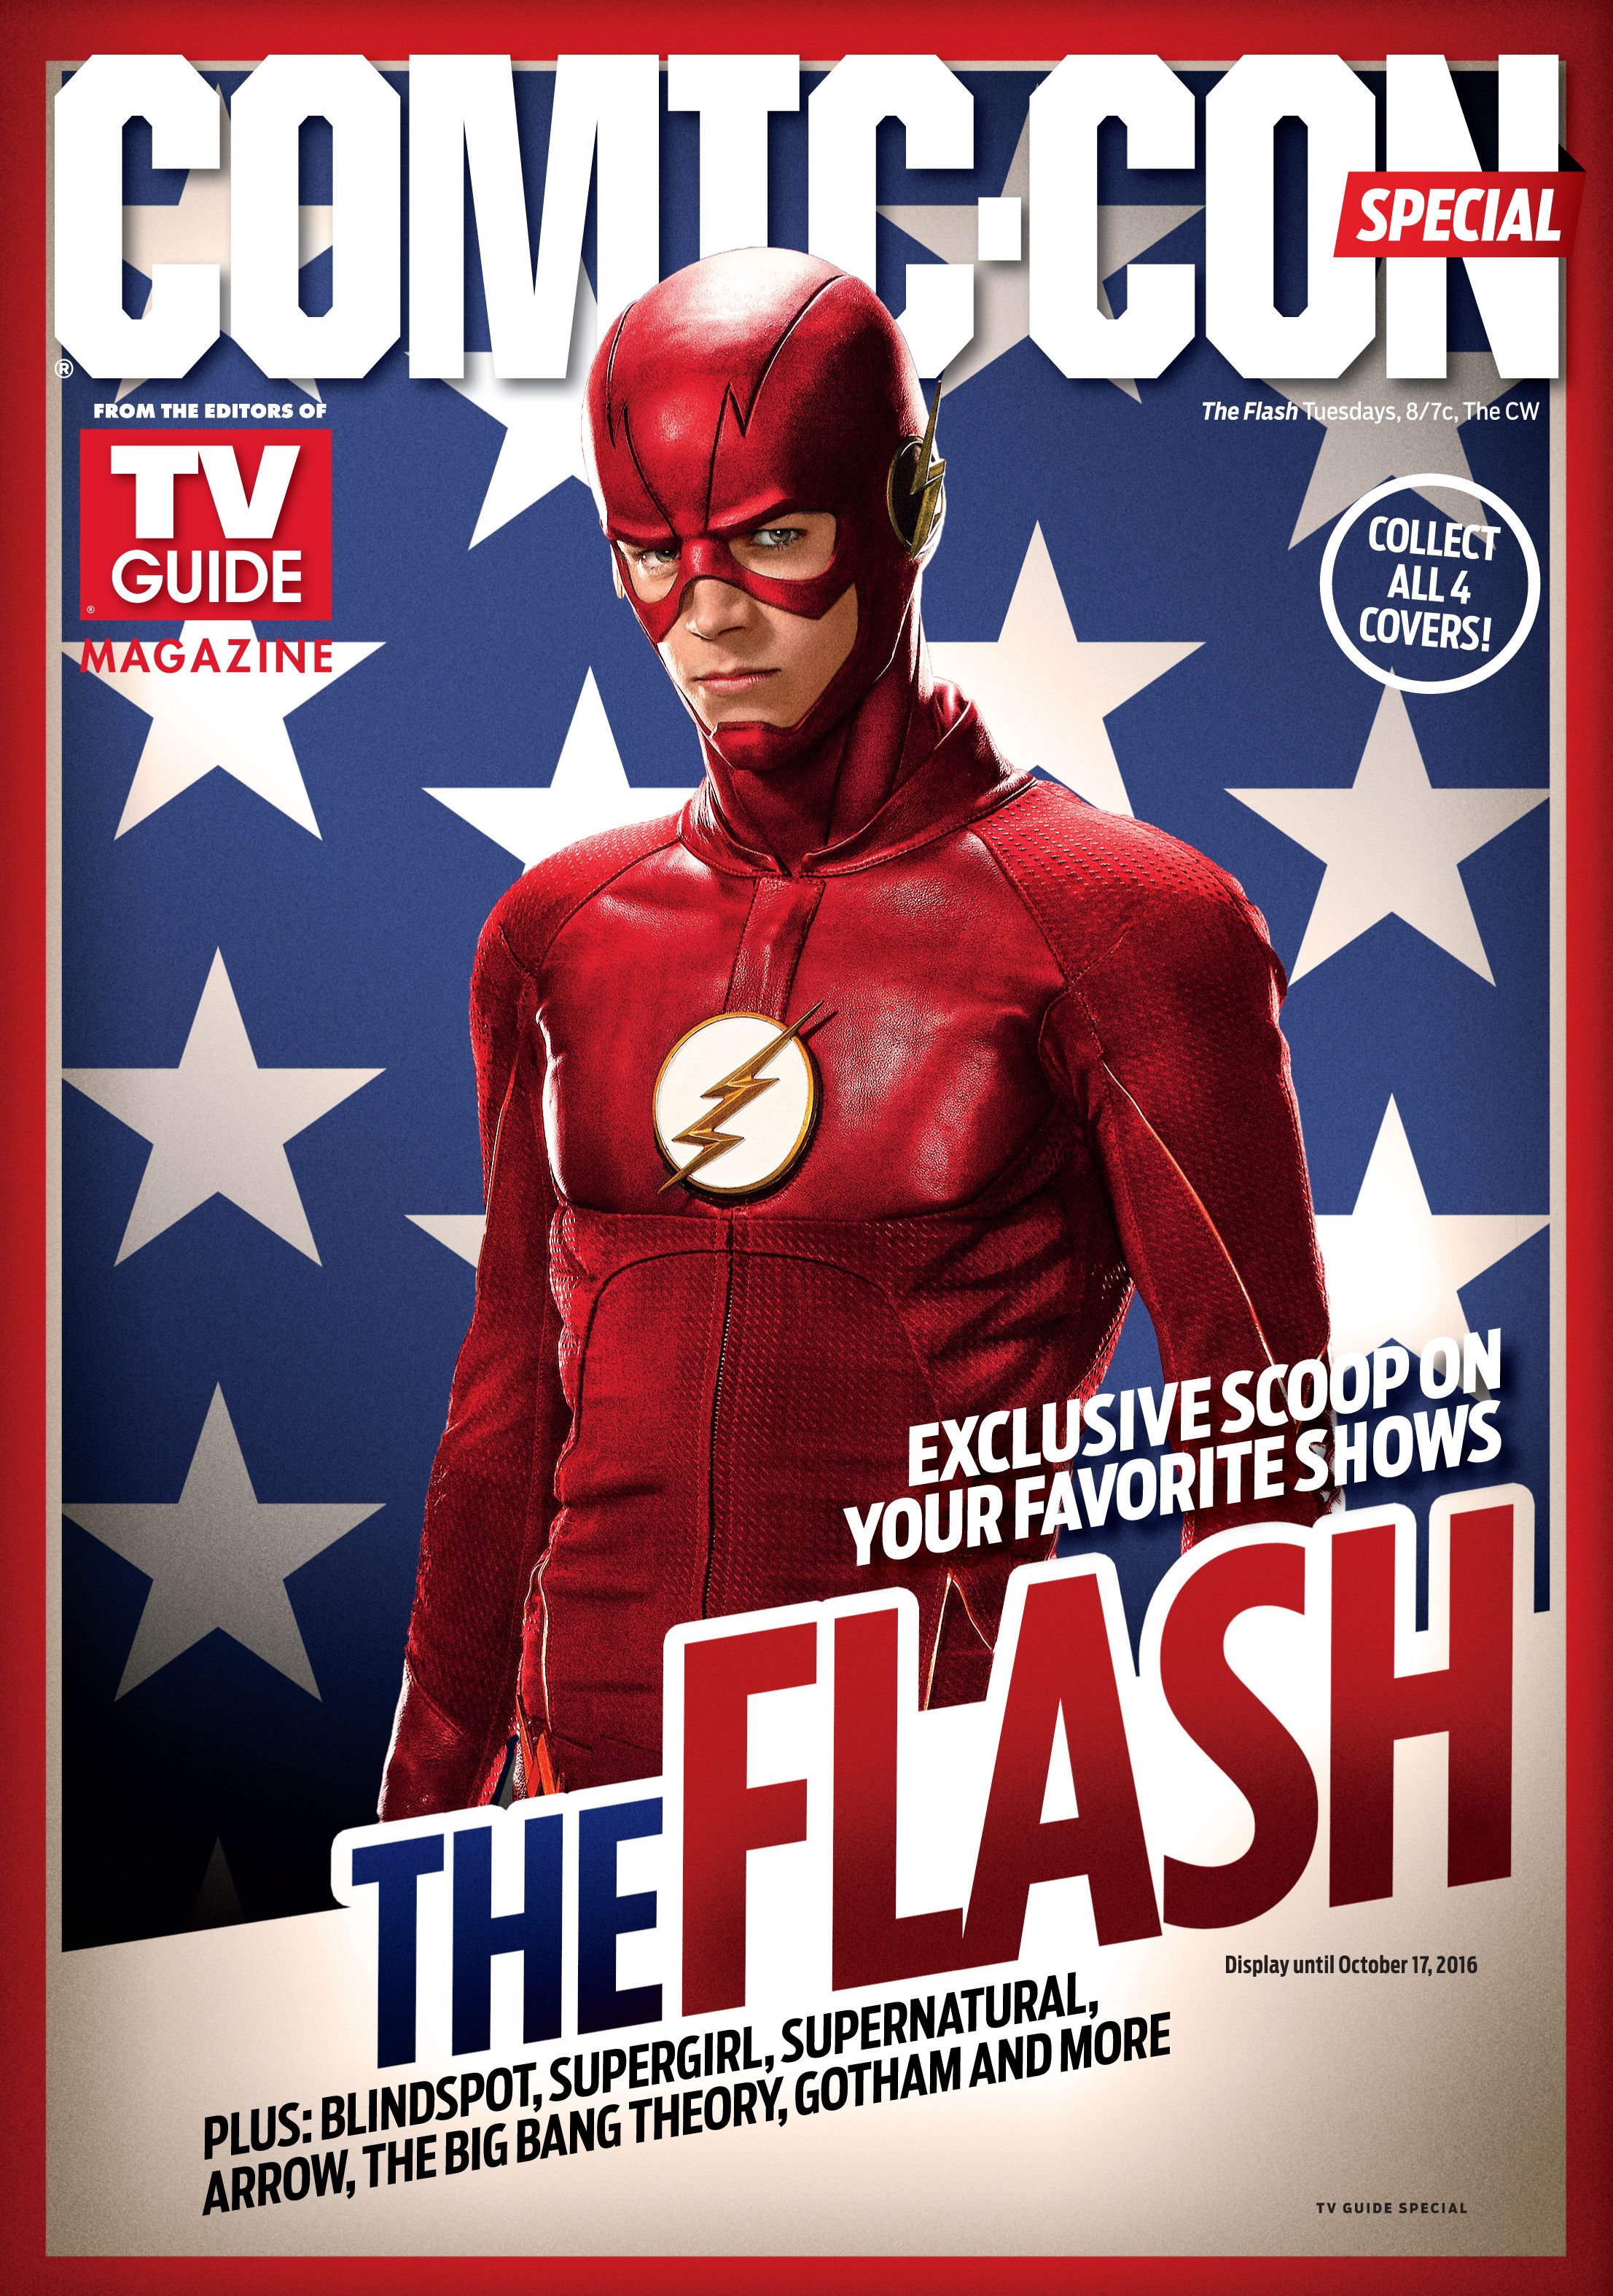 The Flash TV Guide Comic-Con 2016